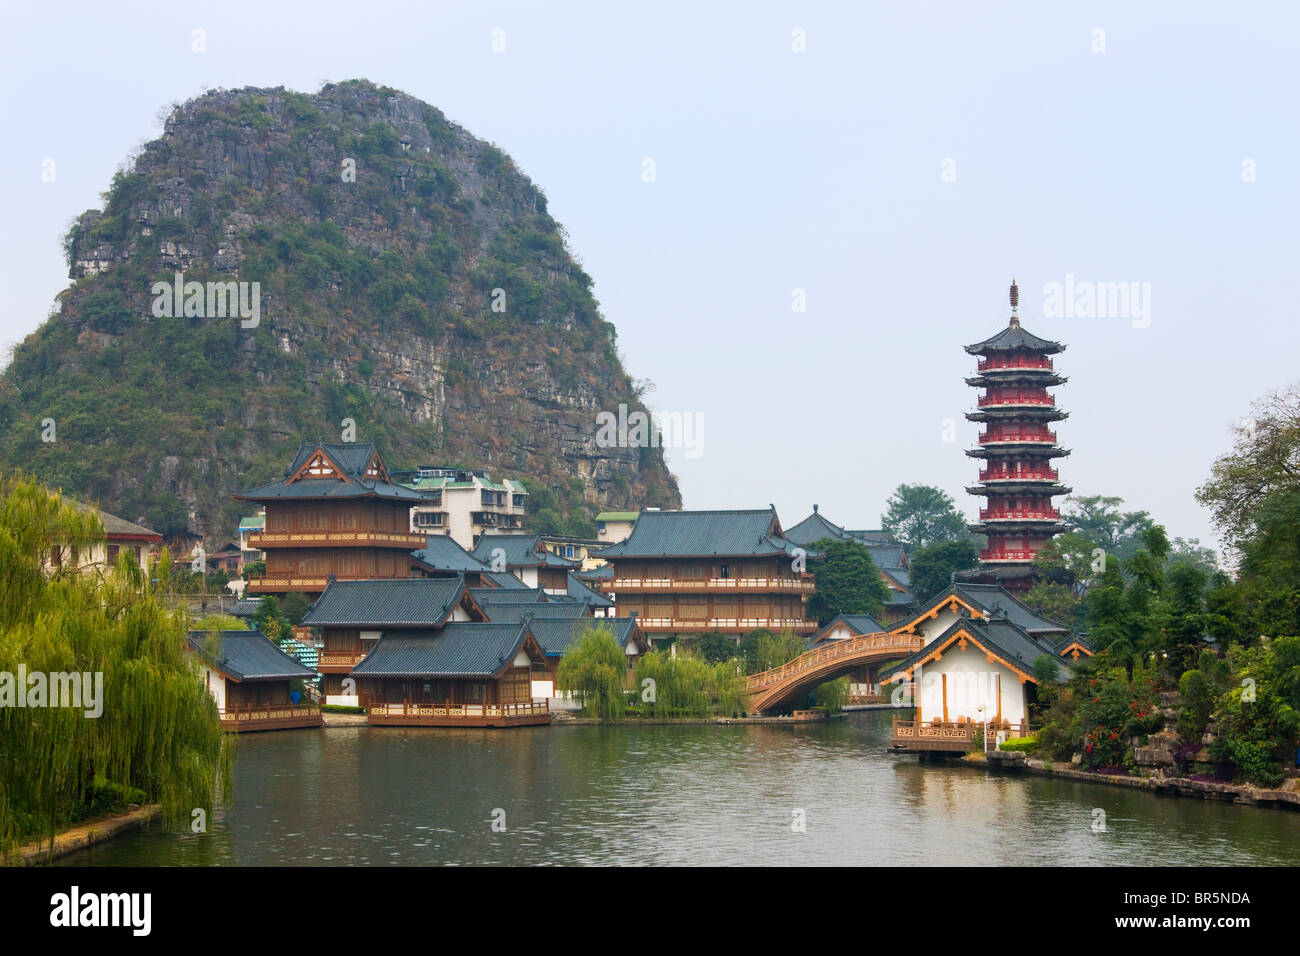 Sun Pagoda (chiamato anche la pagoda dorata) con architettura tradizionale in Shan Lake, Guilin, Guangxi, Cina Foto Stock